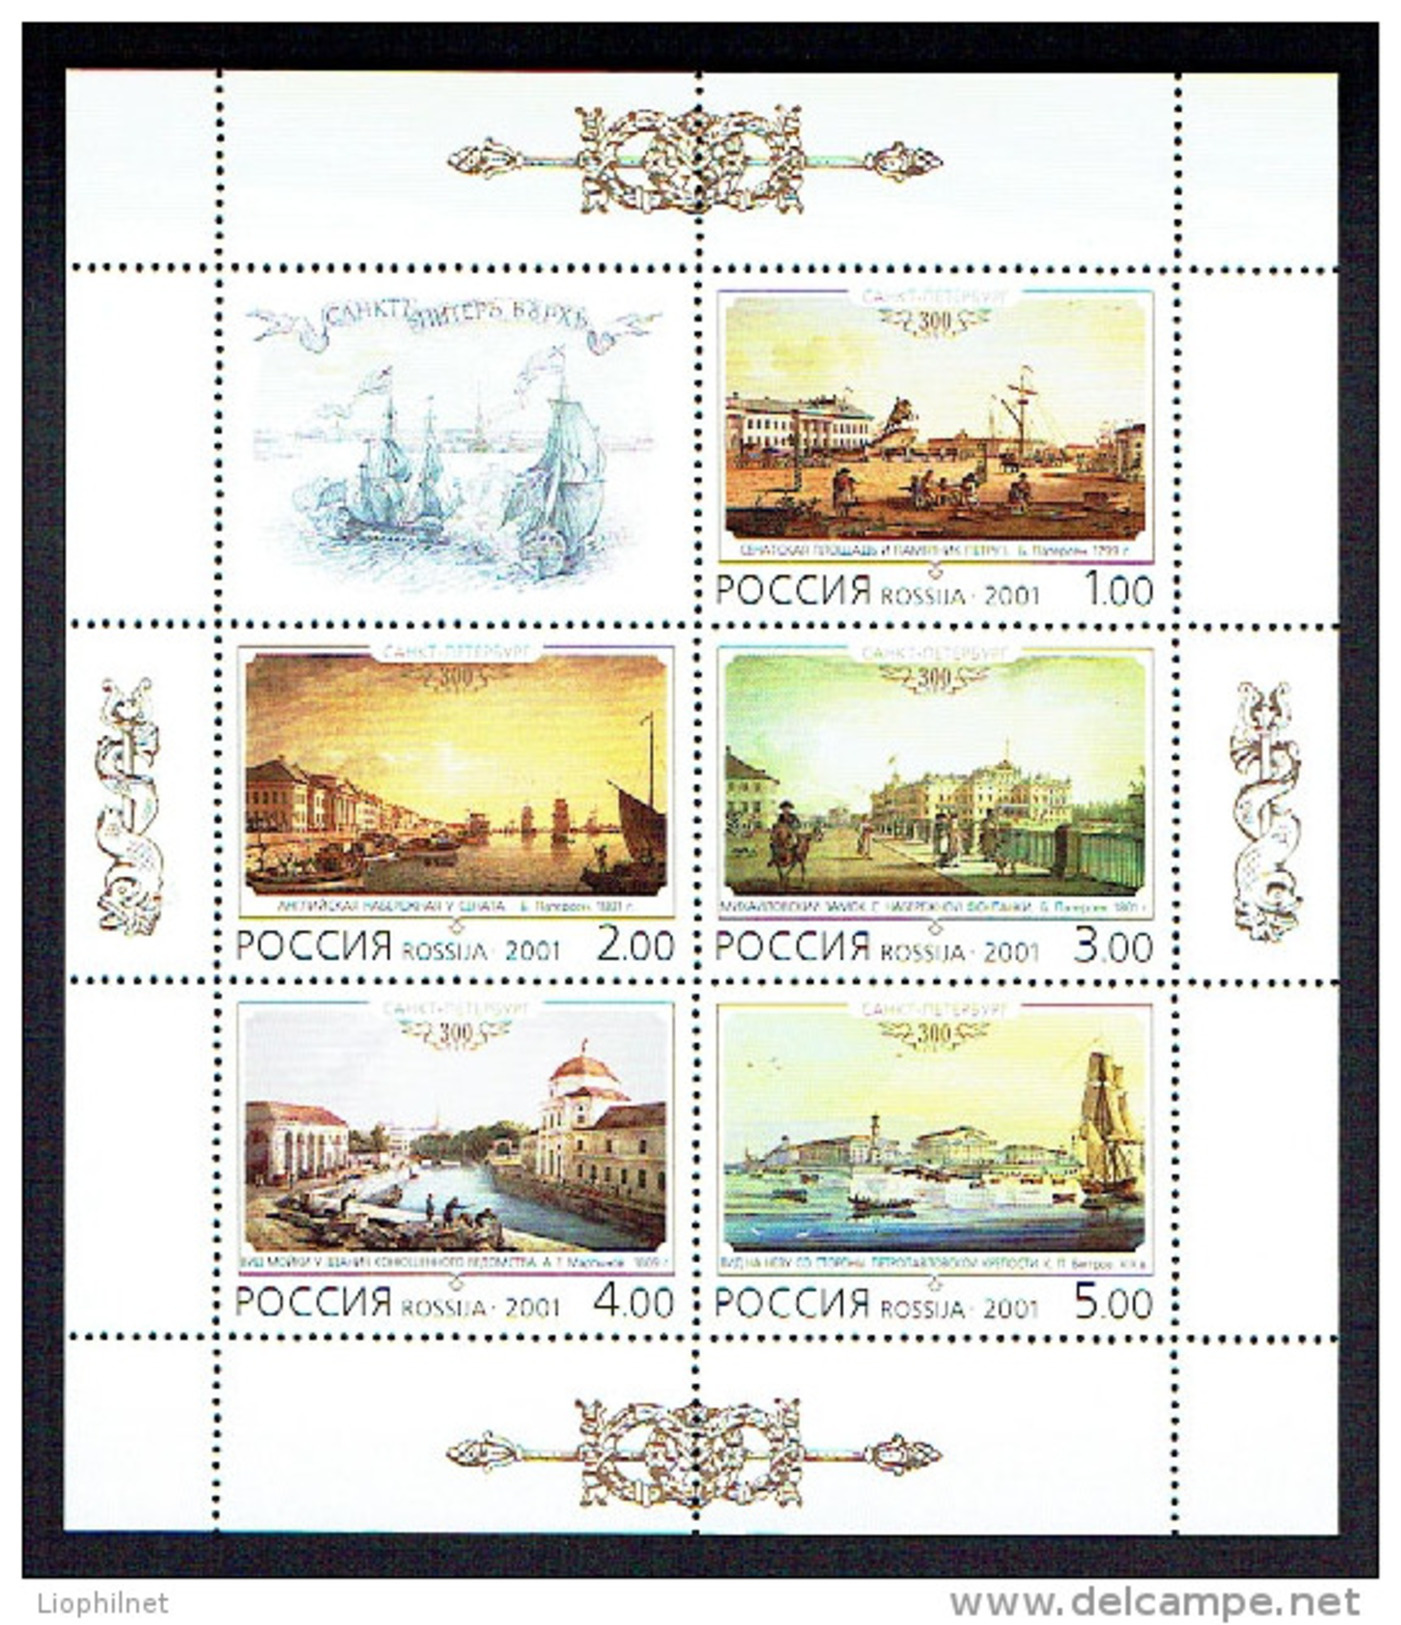 RUSSIE RUSSIA 2001, TABLEAUX ST-PETERSBURG, Feuillet De 5 Valeurs Et Vignette, Neuf / Mint. R845 - Blocs & Feuillets